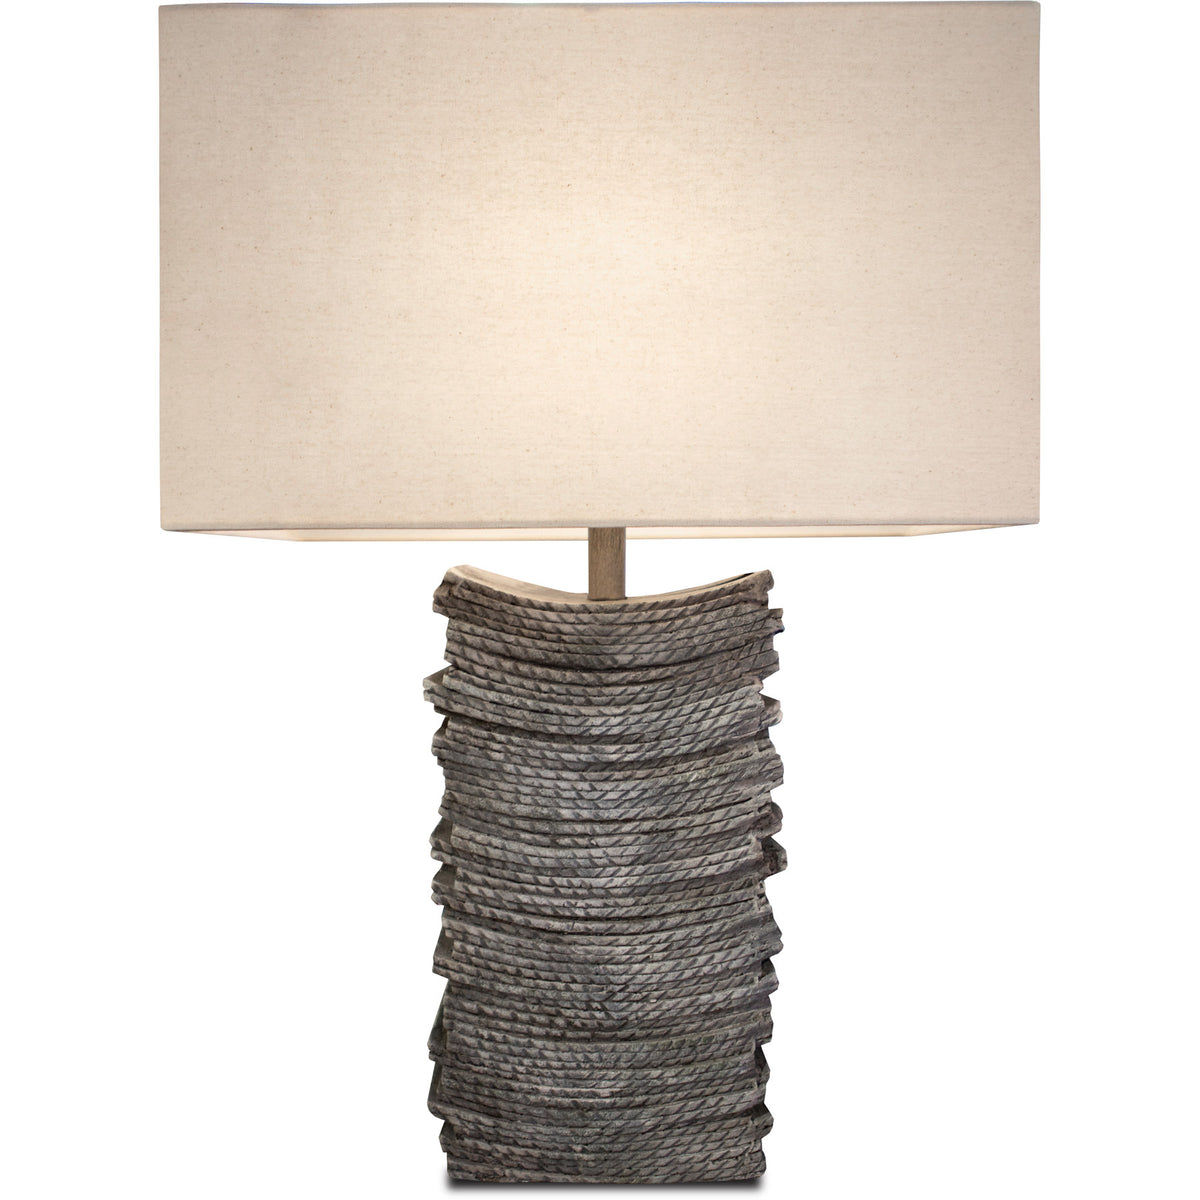 Pozzolana Table Lamp